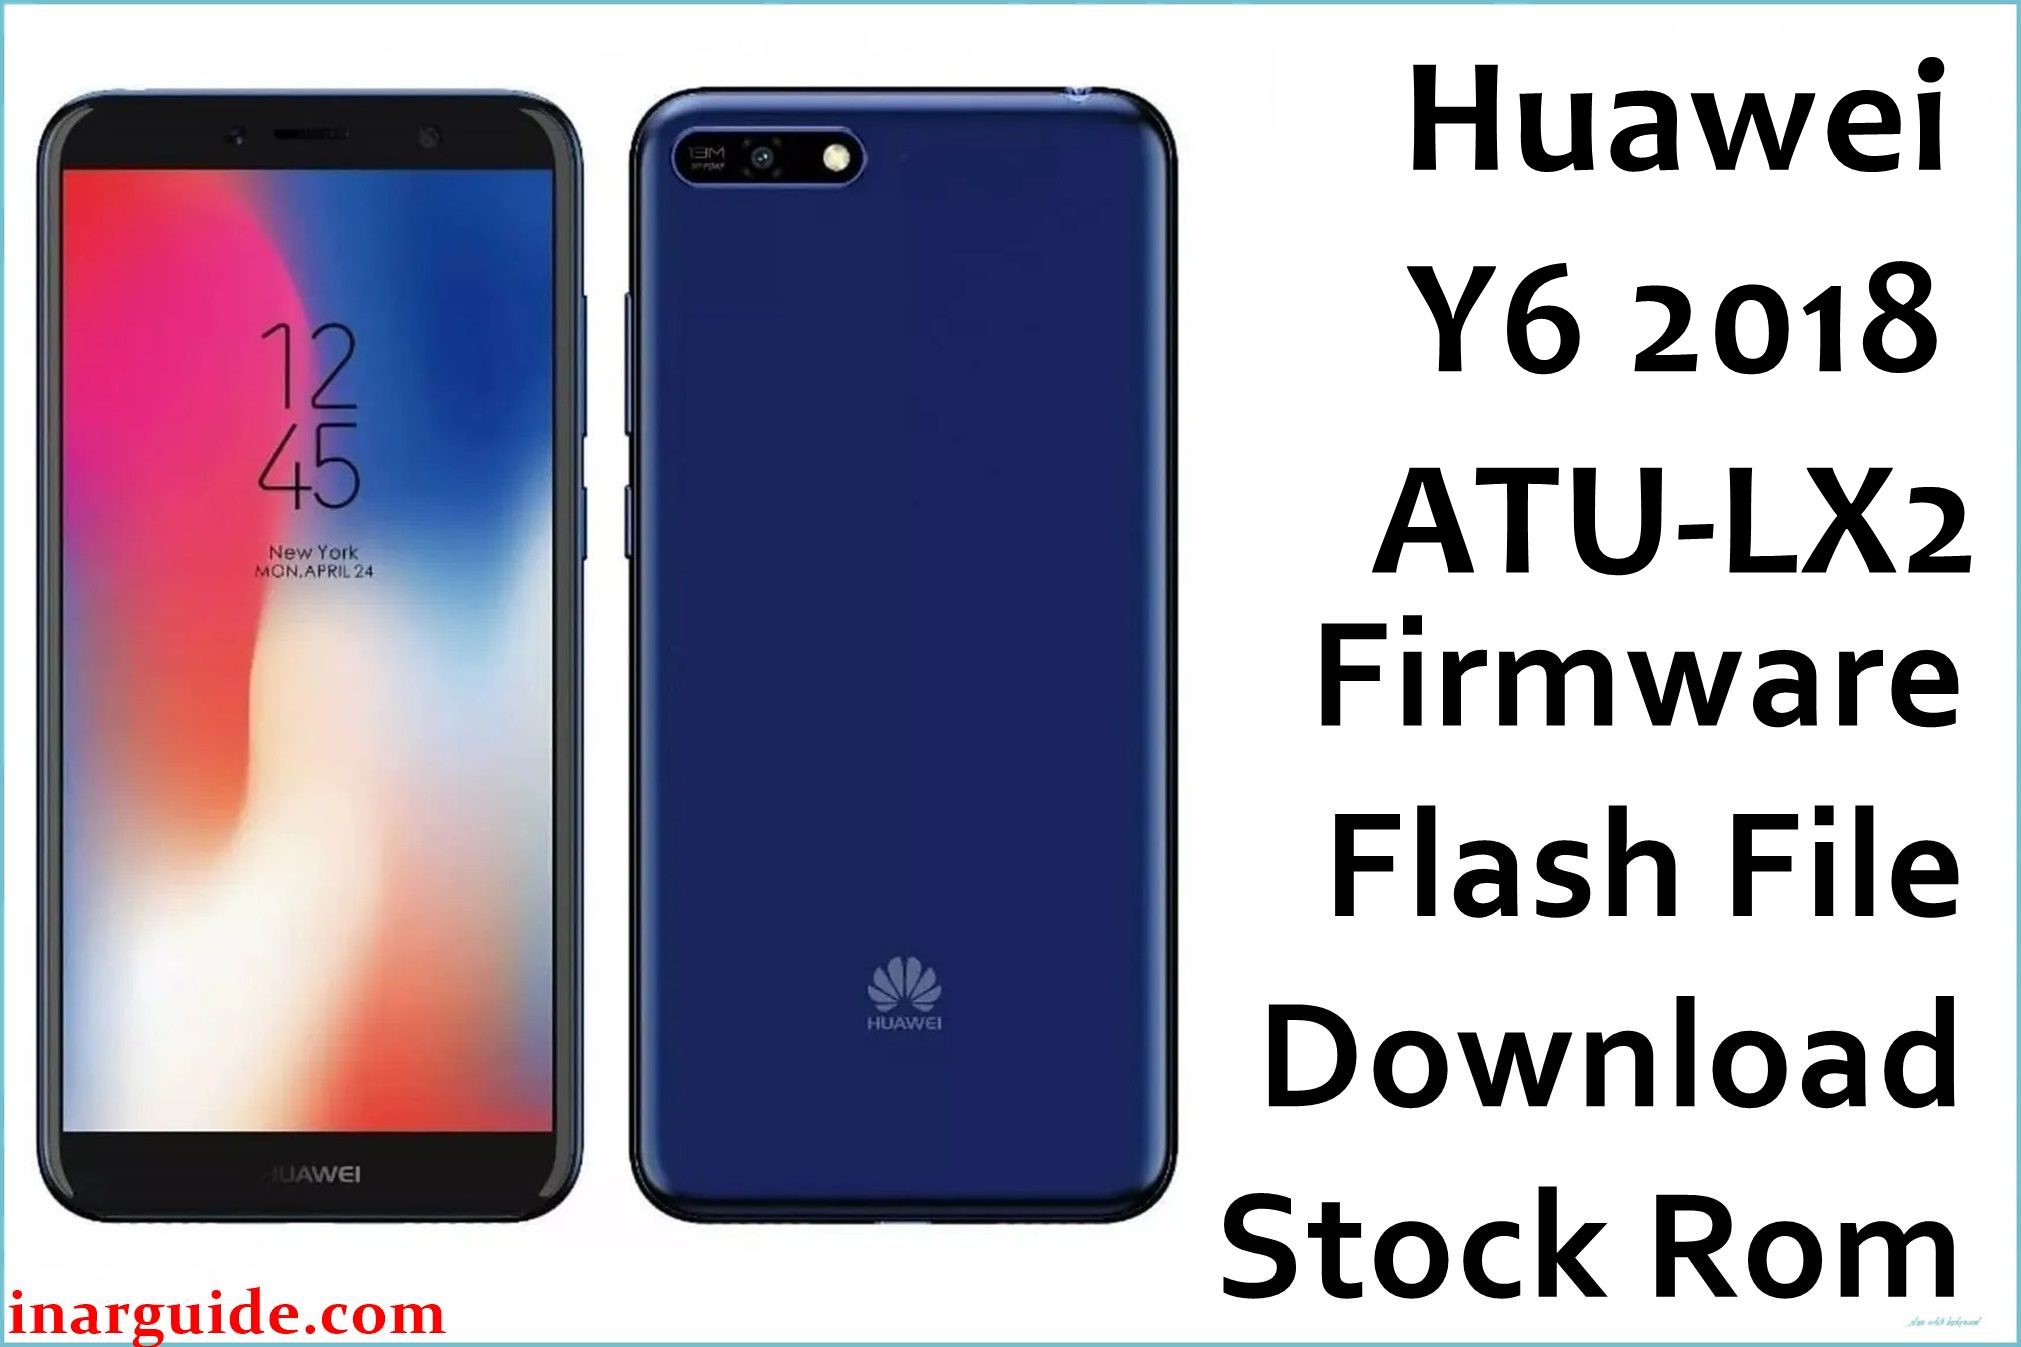 Huawei Y6 2018 ATU LX2